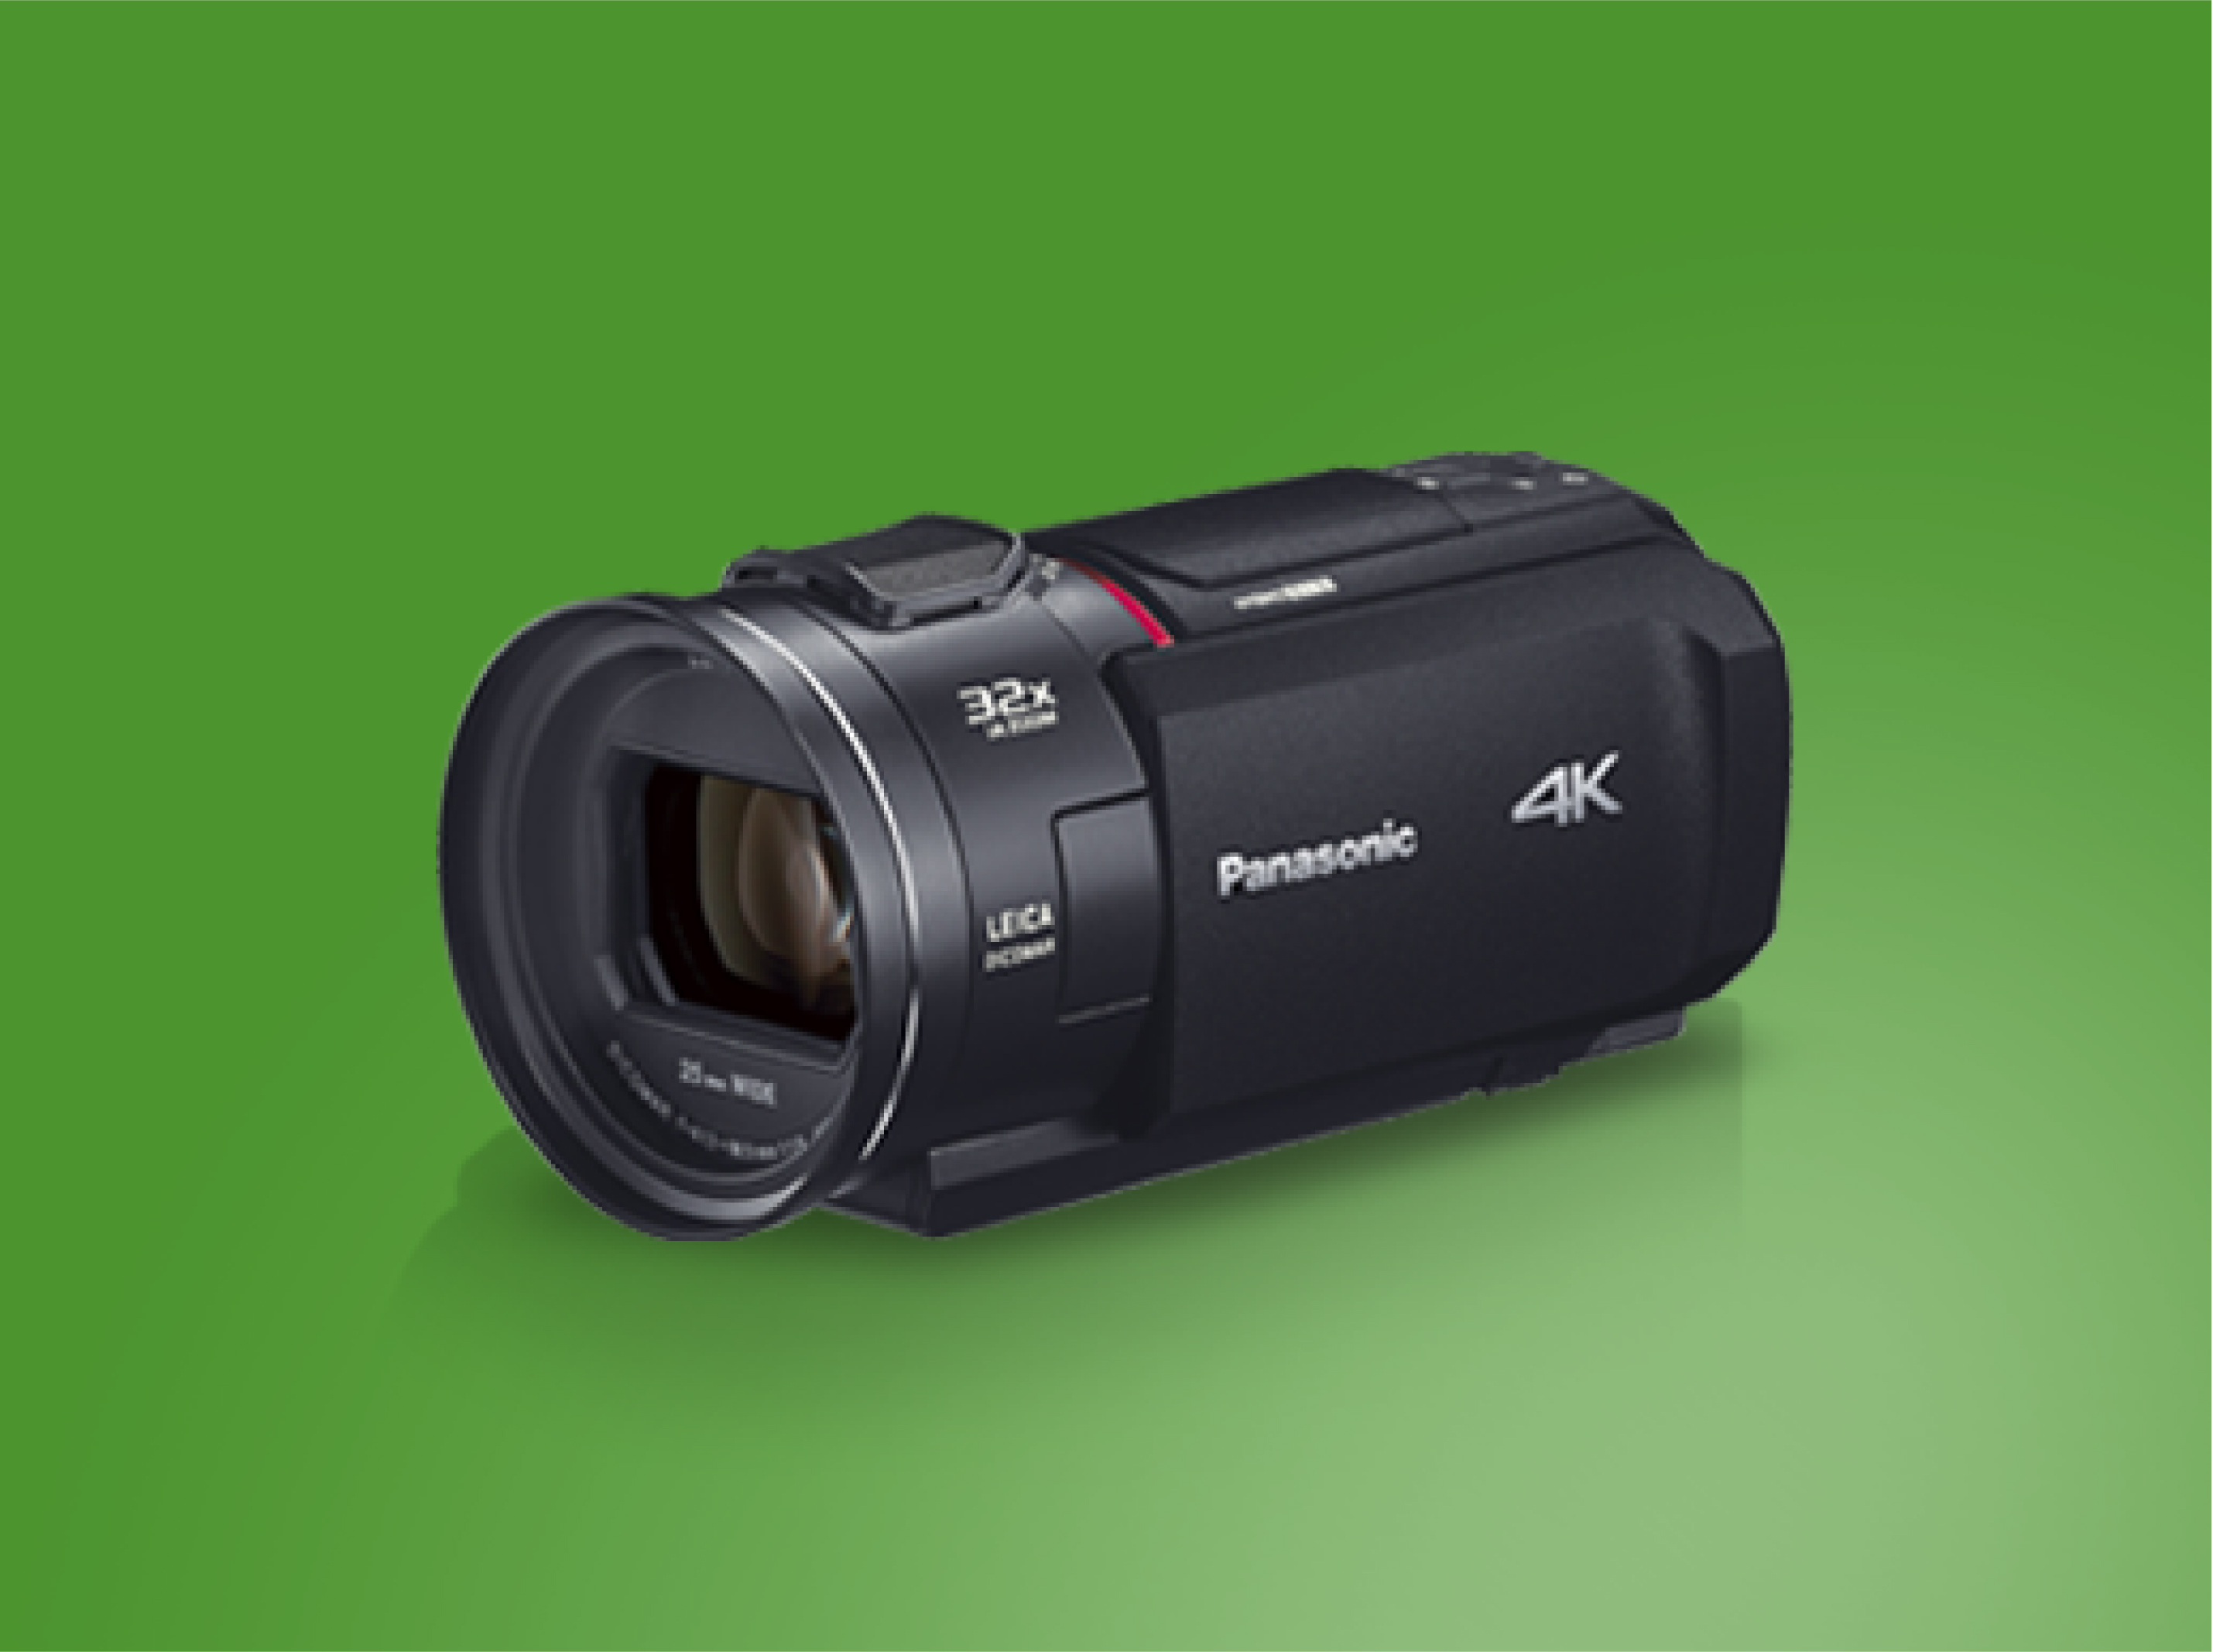 パック デジタル4Kビデオカメラ ブラック パナソニック HC-VX2MS-K :4549980550625:Bサプライズ - 通販 - をハイライ